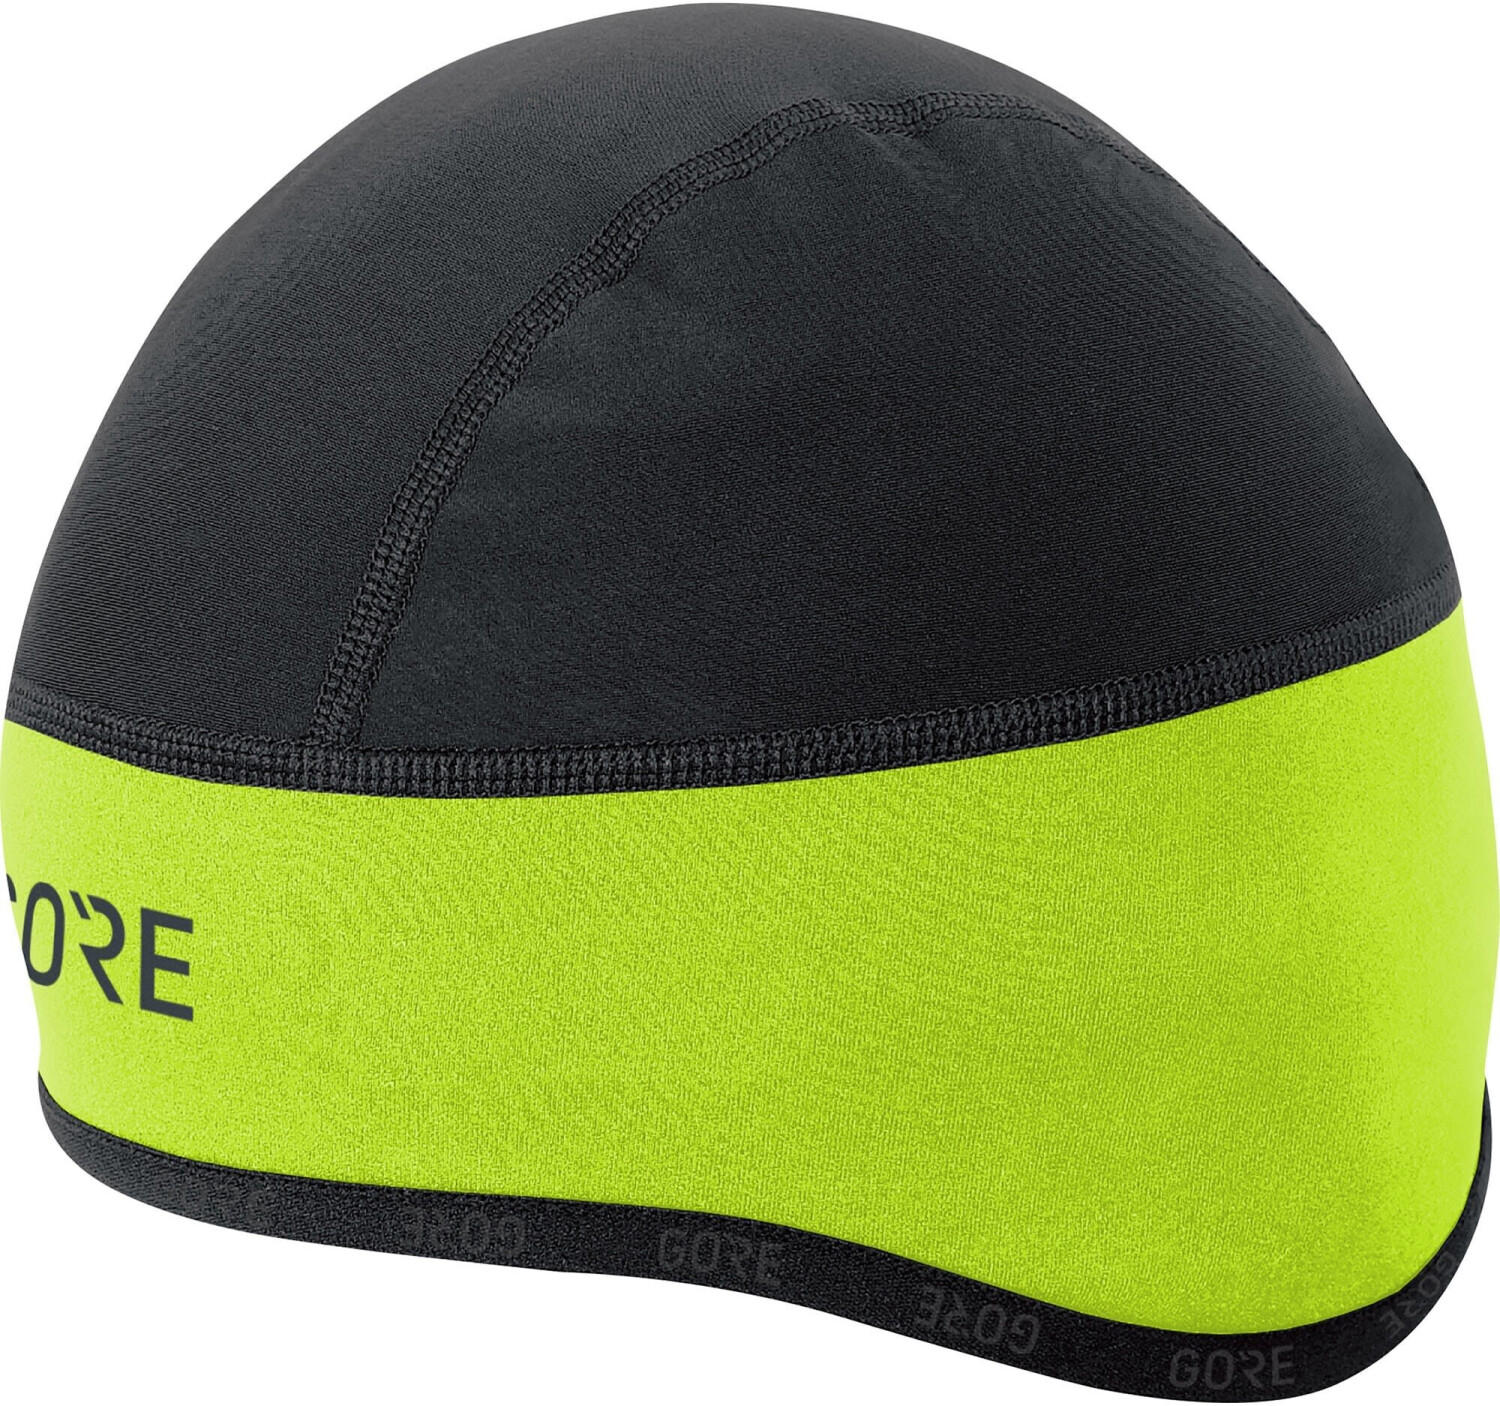 Gore C3 Windstopper Under Helmet Hat neon yellow